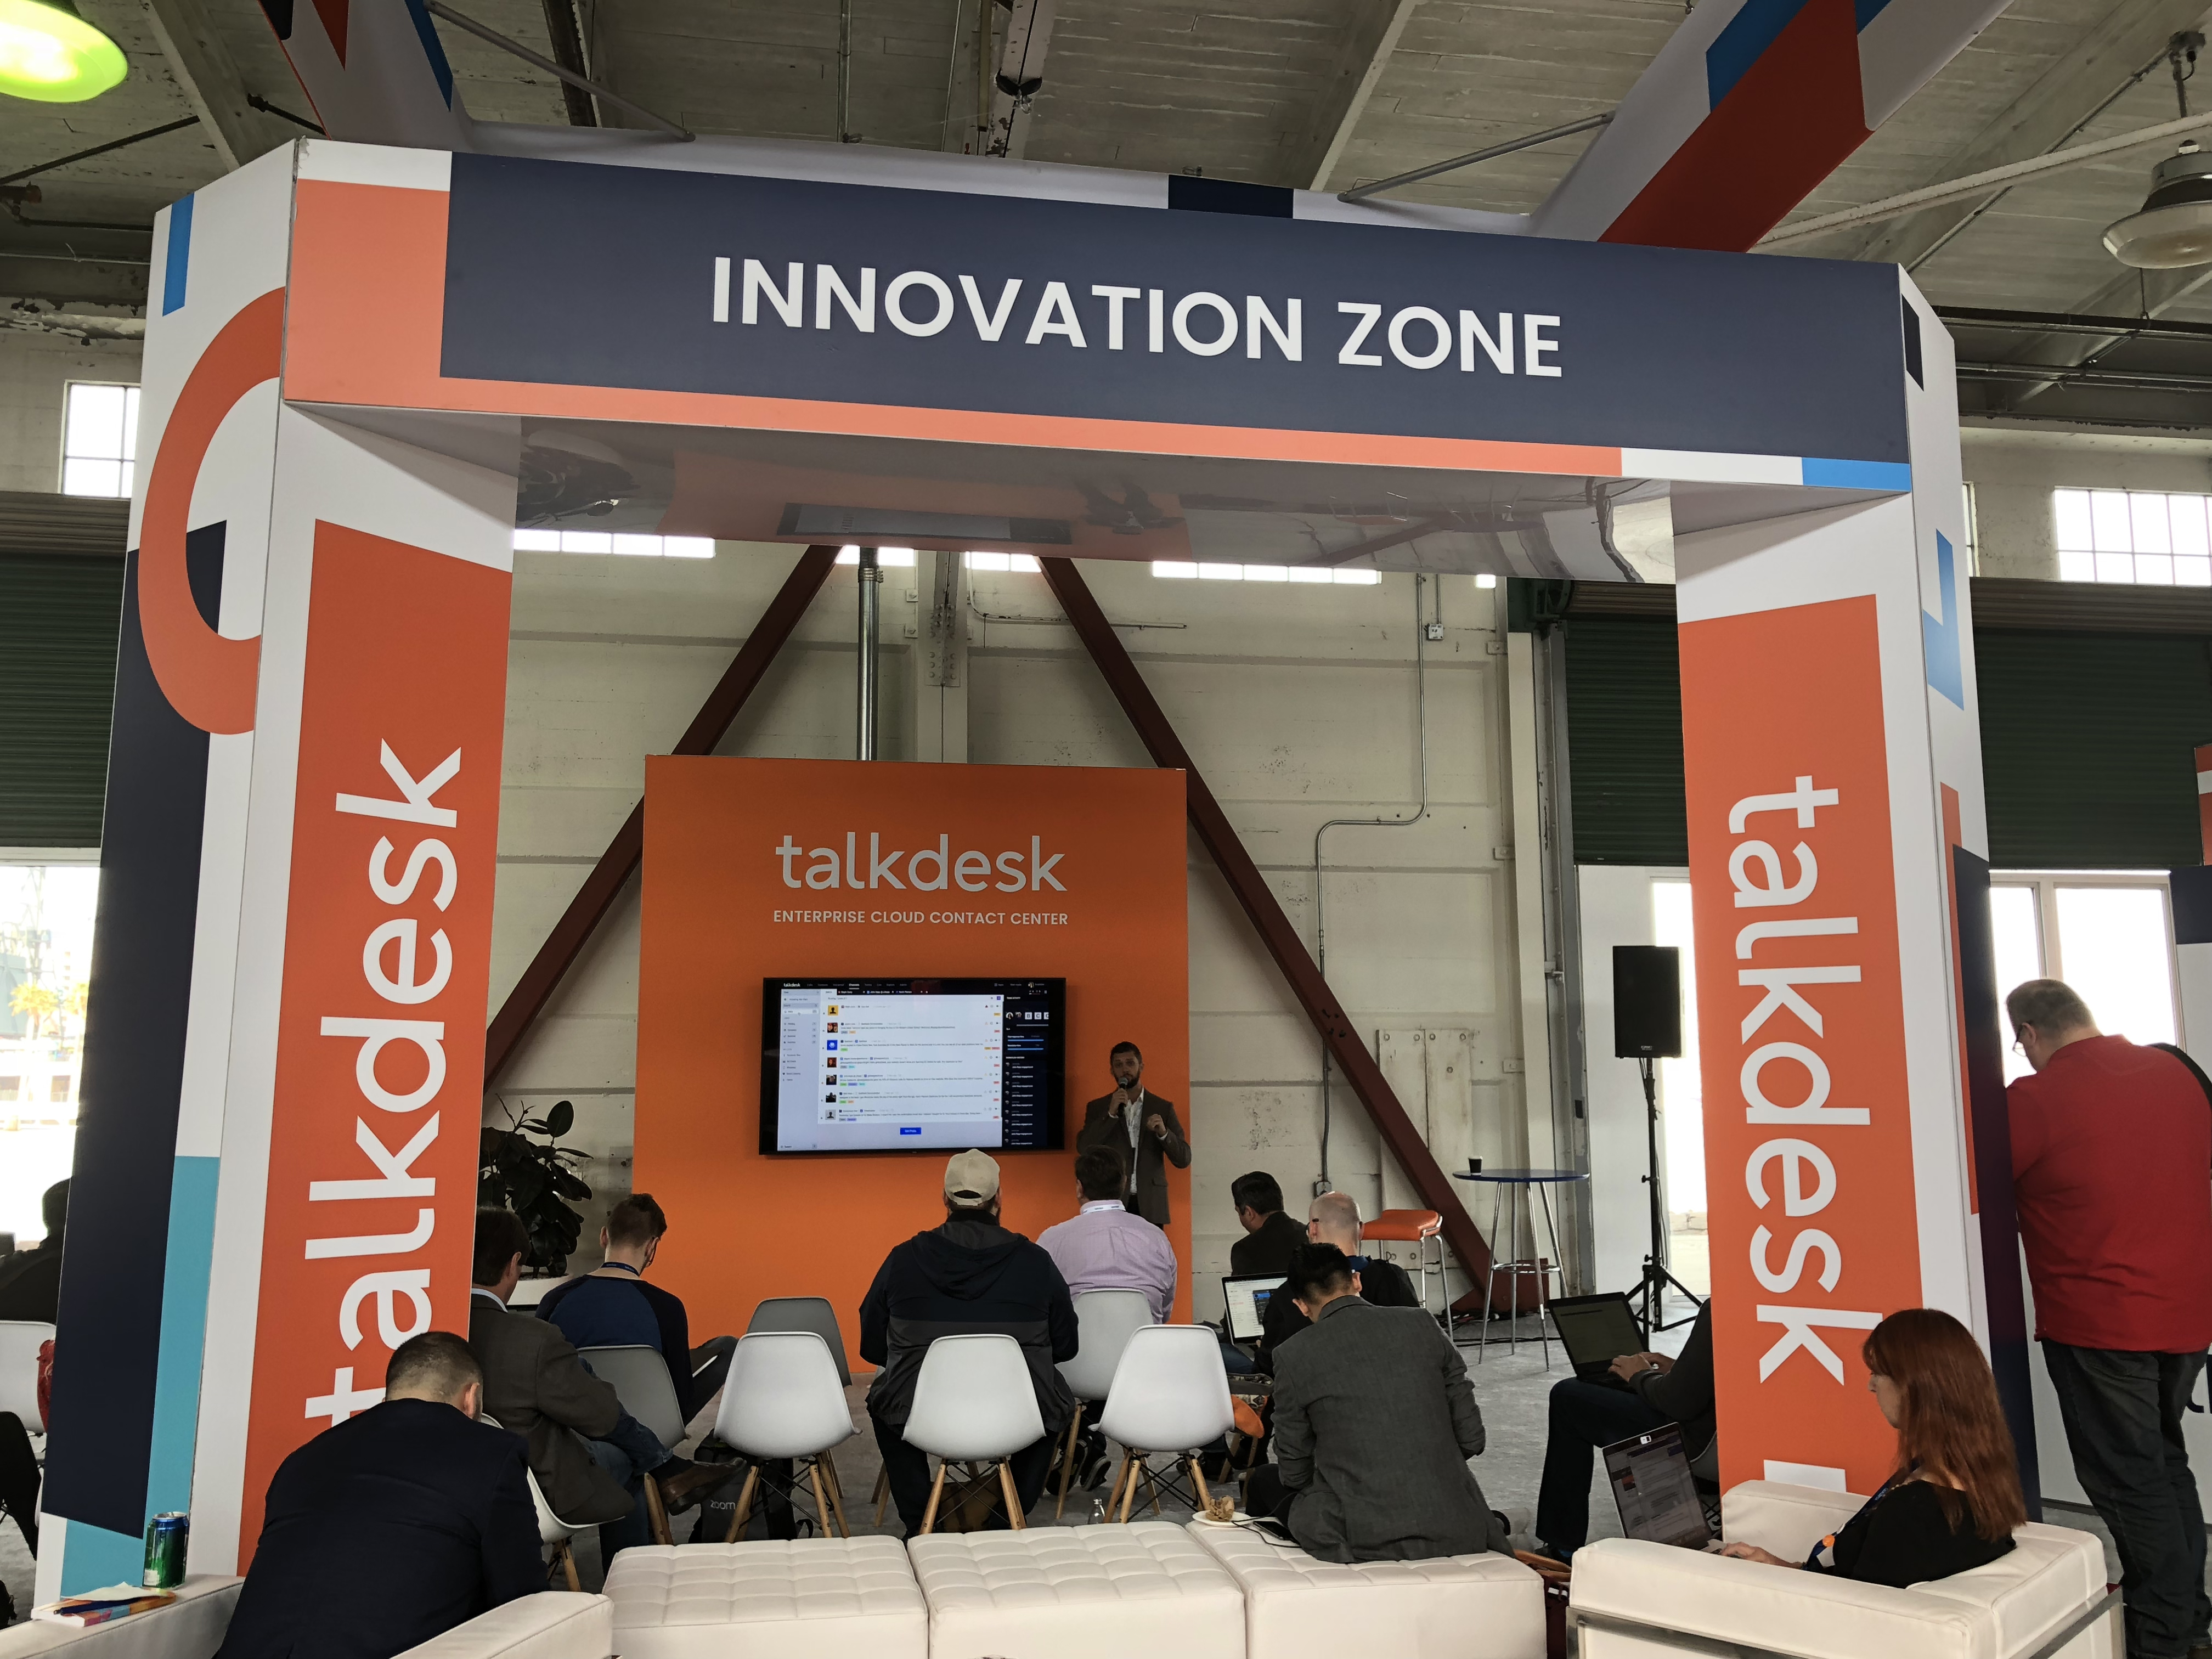 opentalk talkdesk 2018 conference